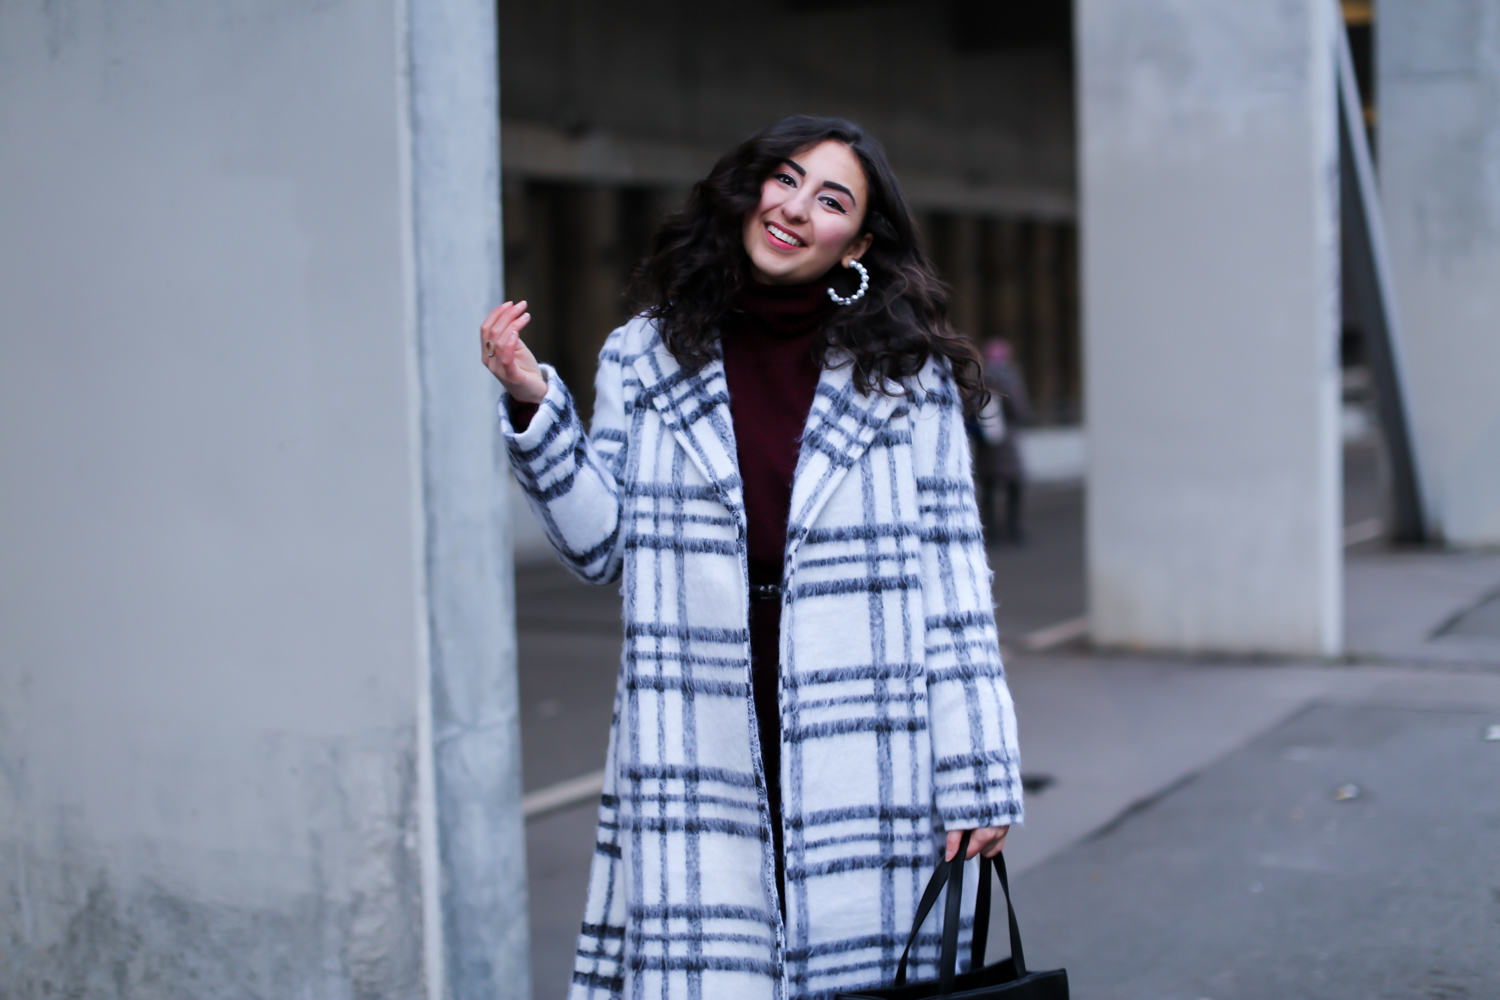 white coat outfit nakd oversize mantel burgundy knit dress overknees winter looke-39